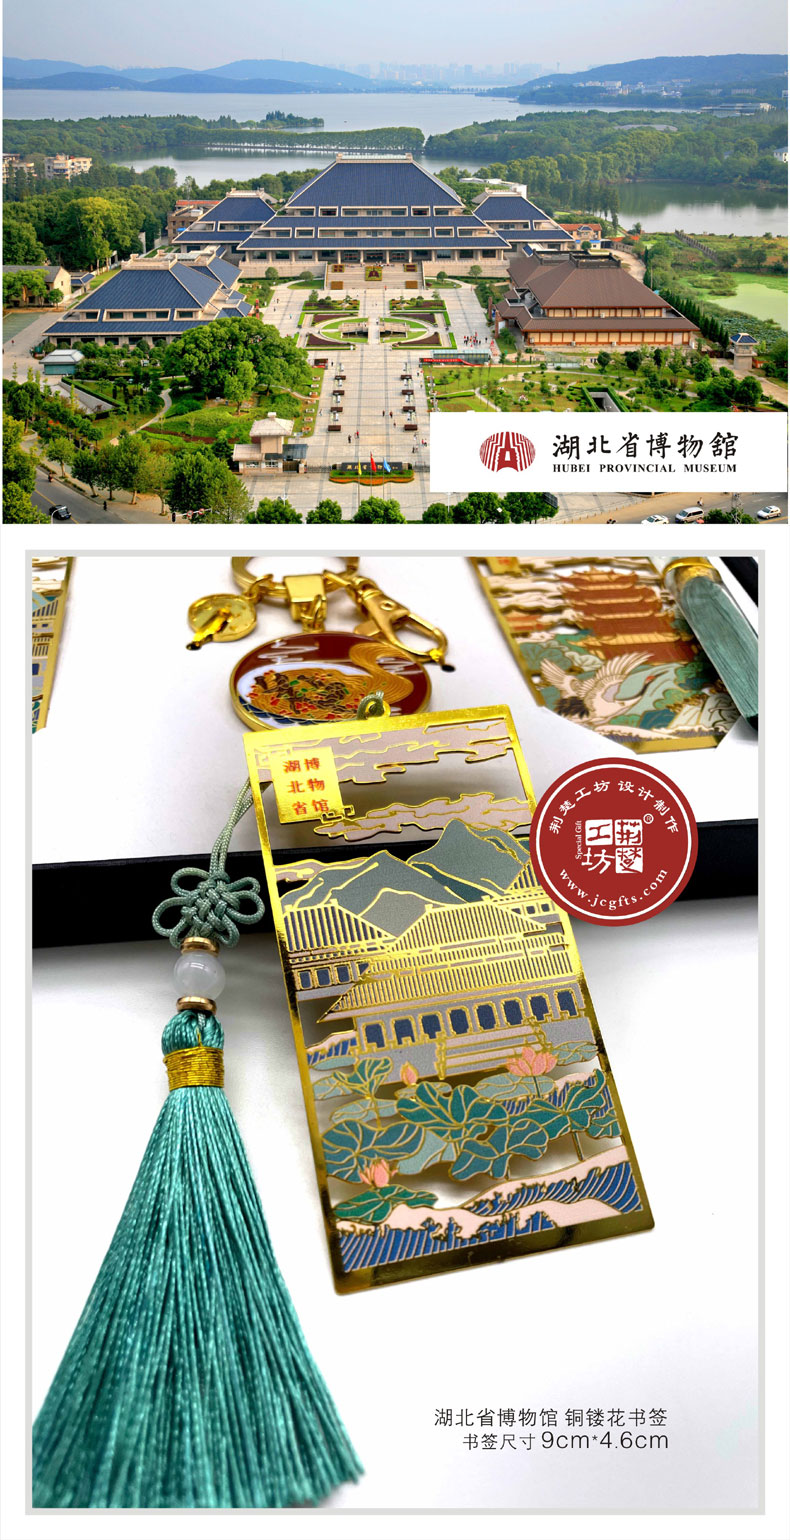 湖北省博物馆填彩铜质书签